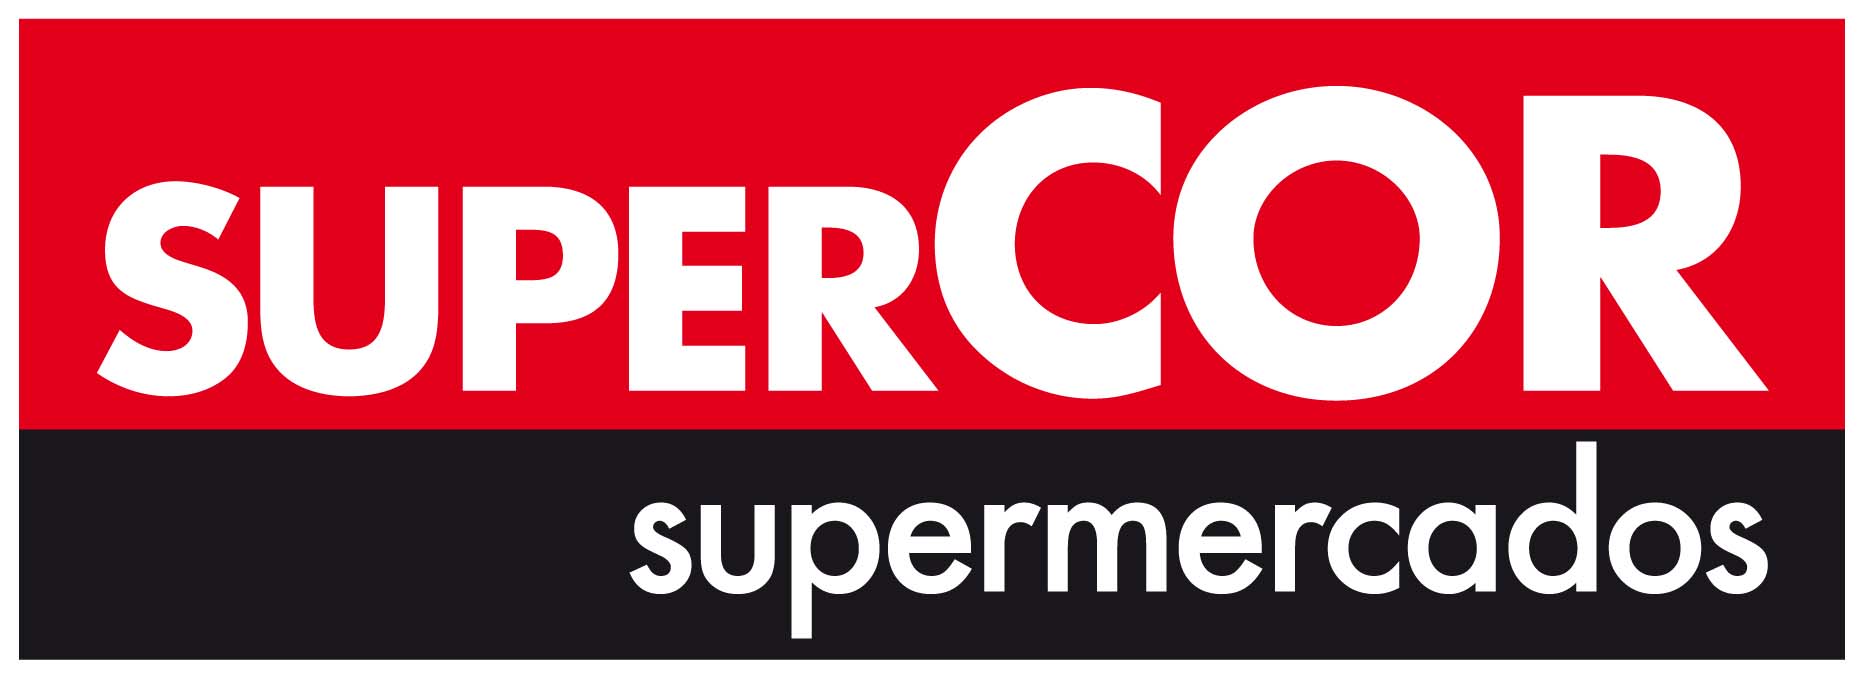 Logo_Supercor